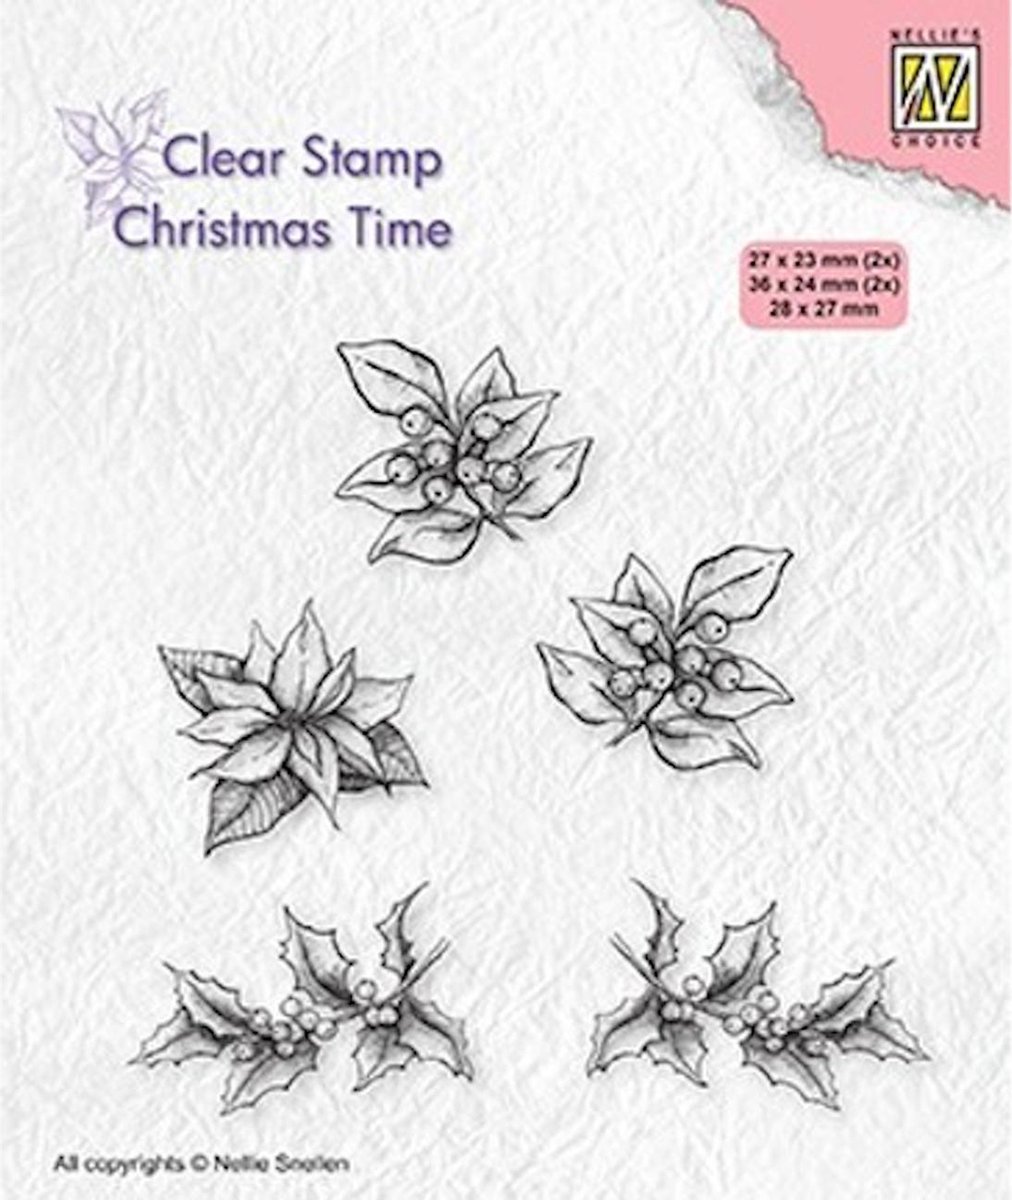 CT036 Clear stamp Nellie Snellen - kerst stempel poinsetta - kerstroos hulst takje en besjes kerstmis